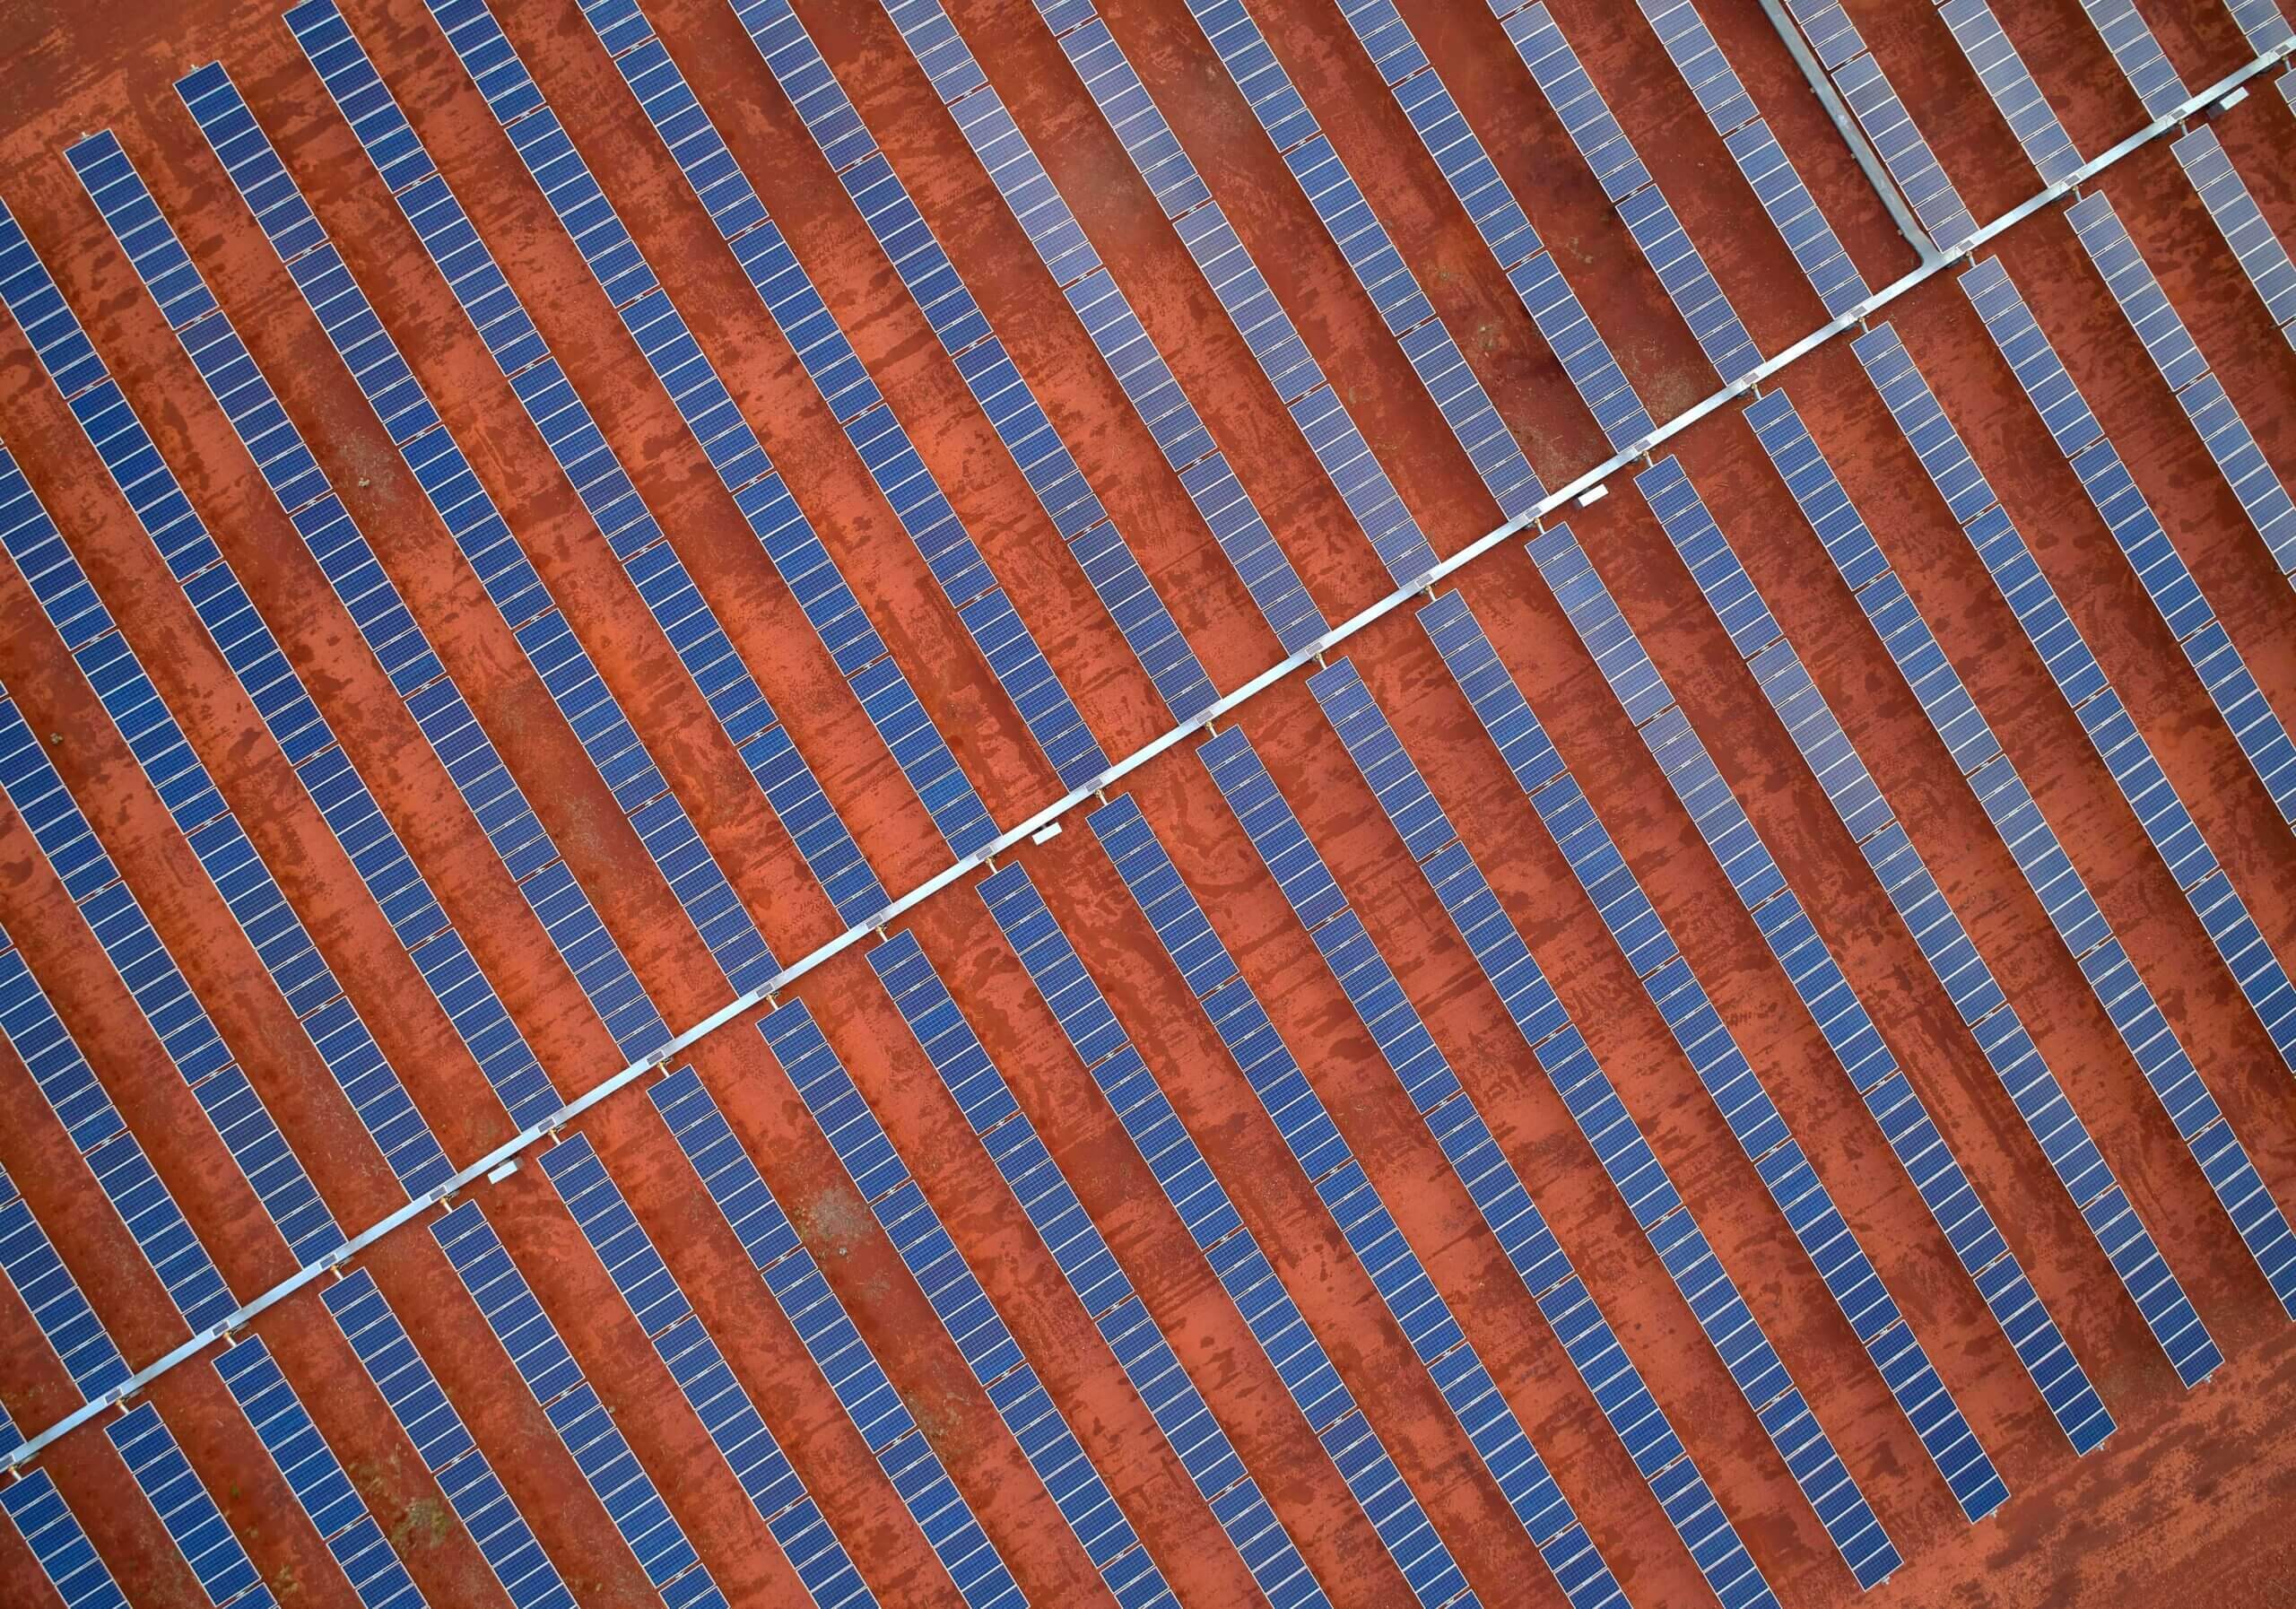 DeGrussa Solar Farm